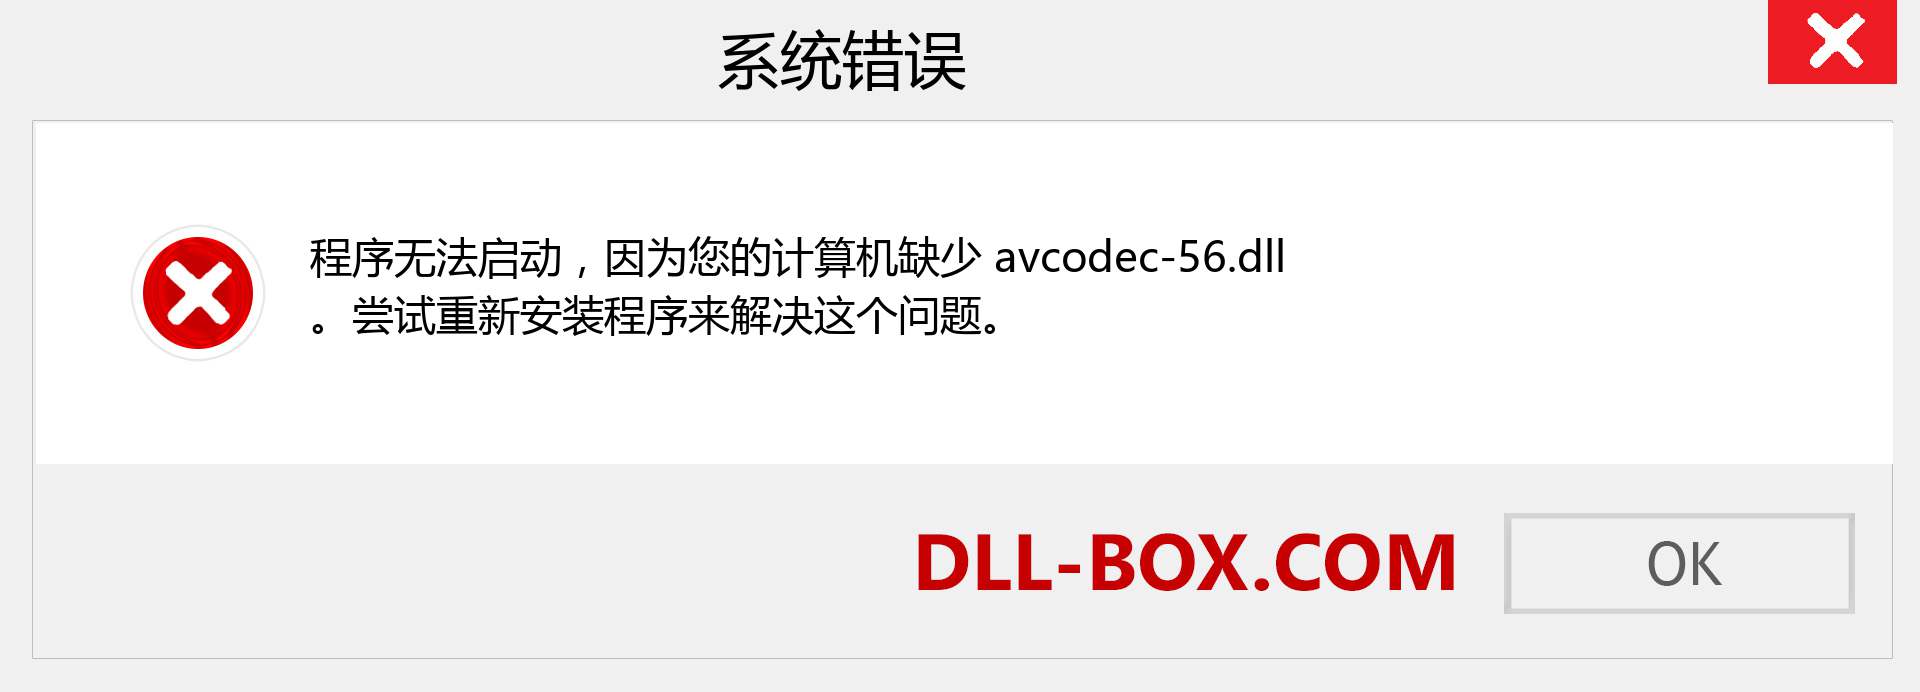 avcodec-56.dll 文件丢失？。 适用于 Windows 7、8、10 的下载 - 修复 Windows、照片、图像上的 avcodec-56 dll 丢失错误